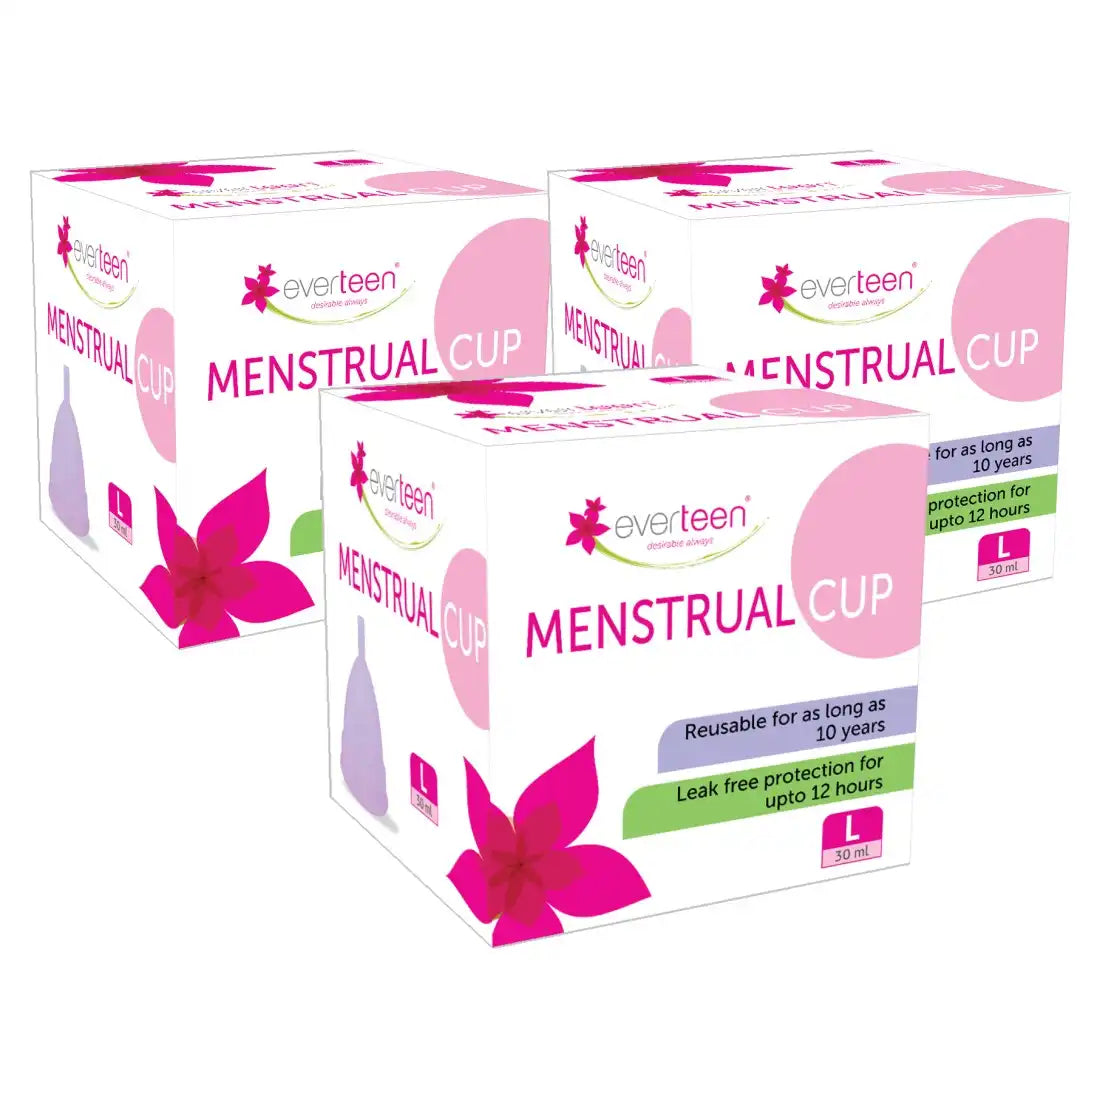 Coupe menstruelle everteen pour les règles des femmes